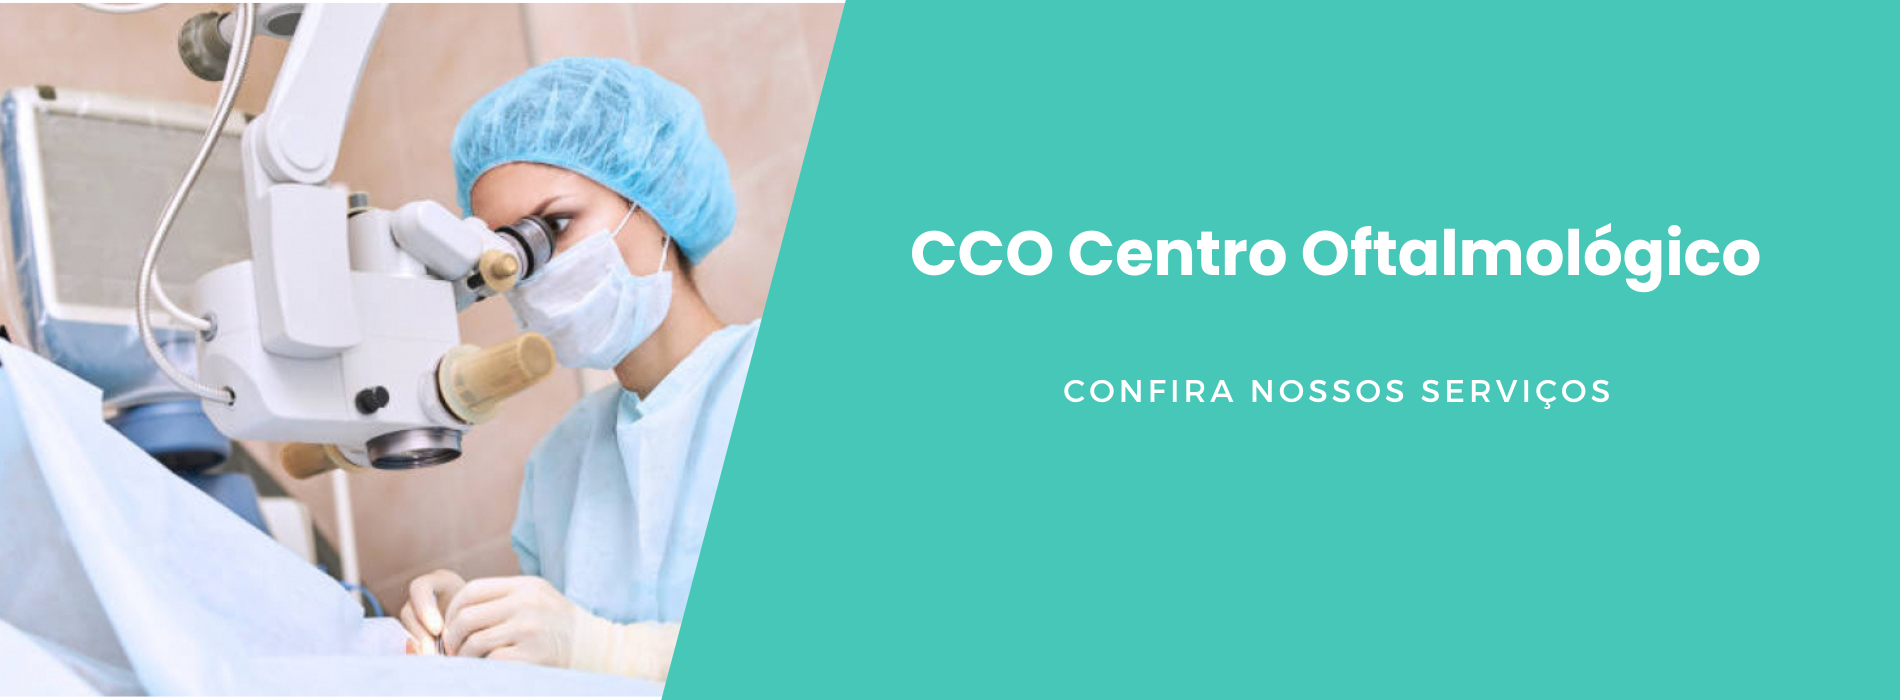 cco-centro-oftalmologico